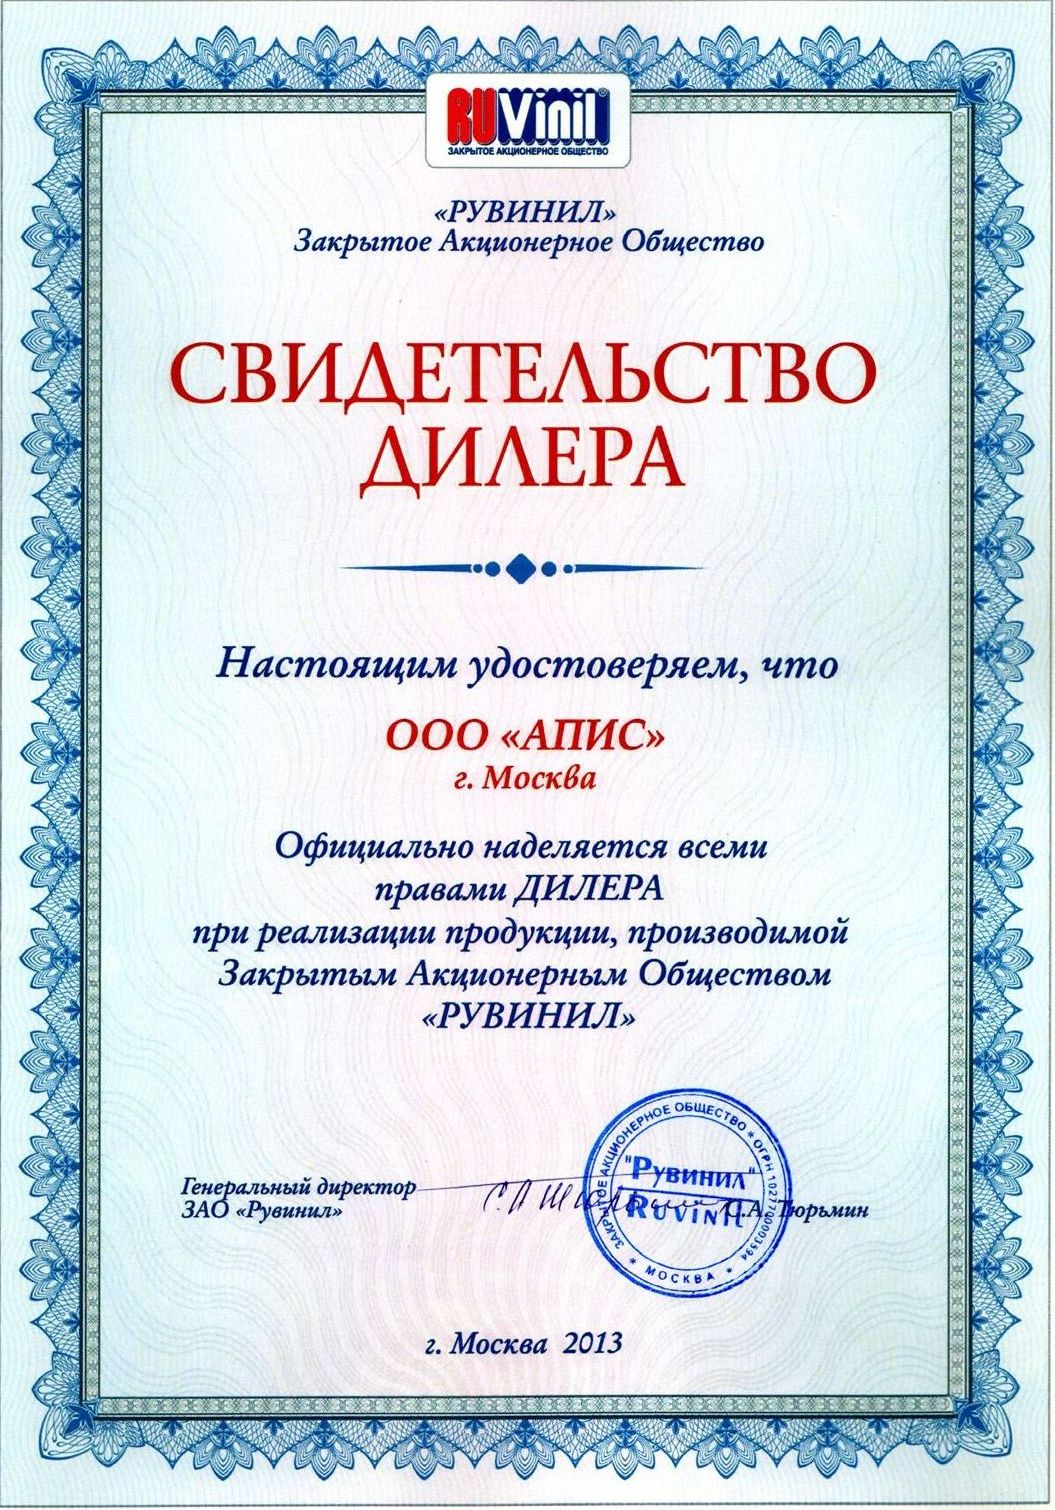 Сертификат дилера РУВИНИЛ